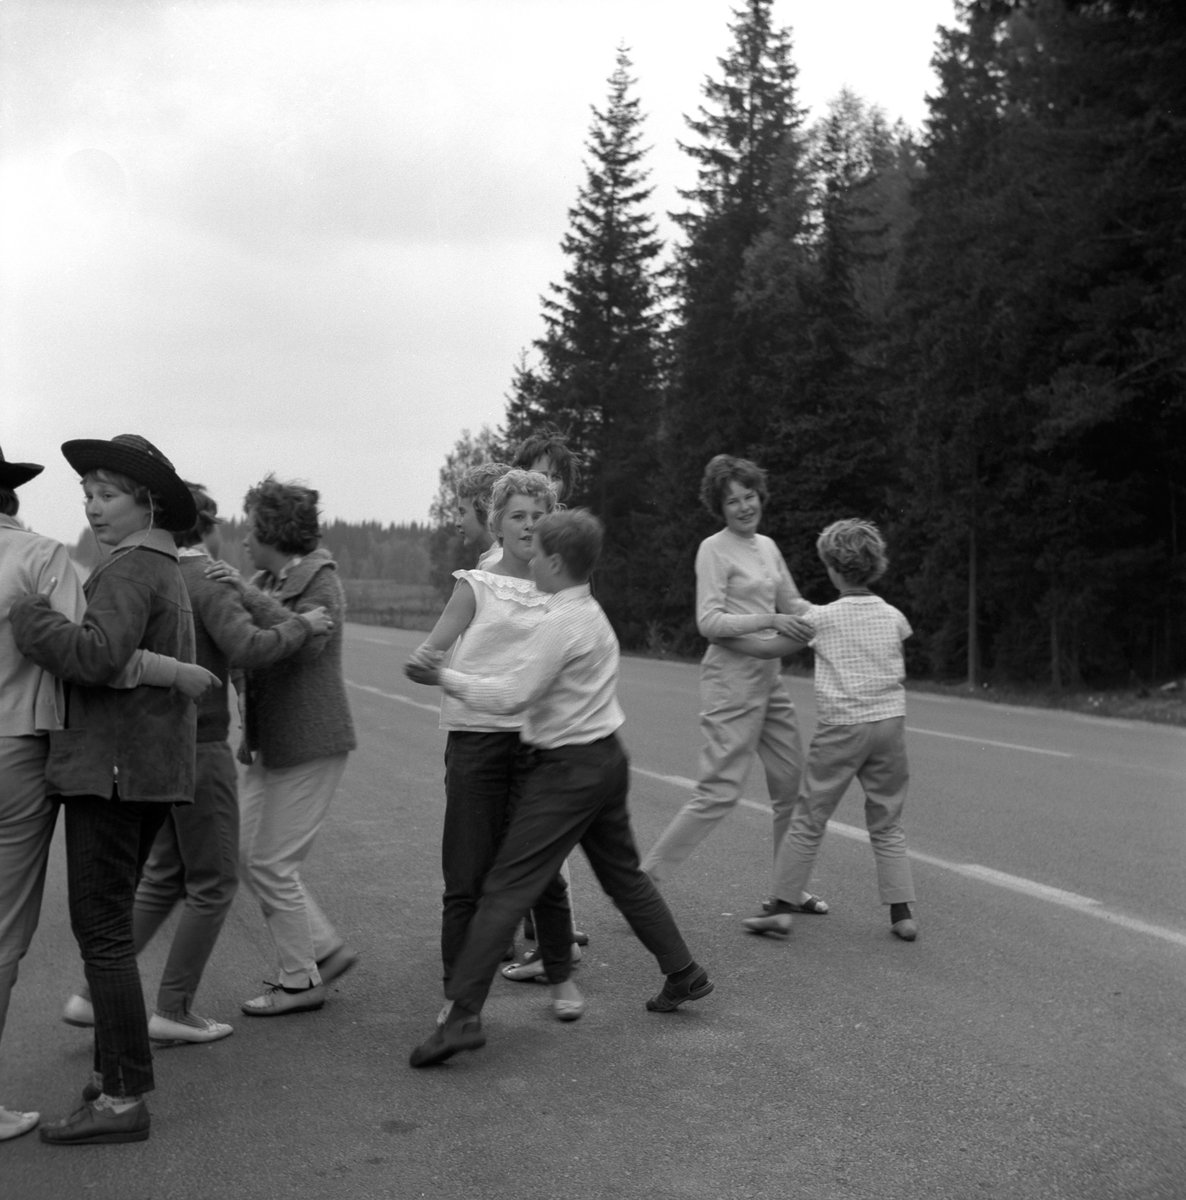 År 1961 på våren är klass 6 från Österängsskolan i Jönköping på skolresa i Småland tillsammans med sin lärare Göte Ohlsson. Här på väg till Lindhammars glasbruk. Efter att ha suttit stilla i bussen behöver man röra på sig, så det blir en liten danspaus på en rastplats.
På Österängsskolan var det tradition att man i 4:an åkte till Vadstena och Omberg, i 5:an till Västergötland (Falbygden, Skara, Varnhem) och i 6:an en resa till glasbruk i Småland.